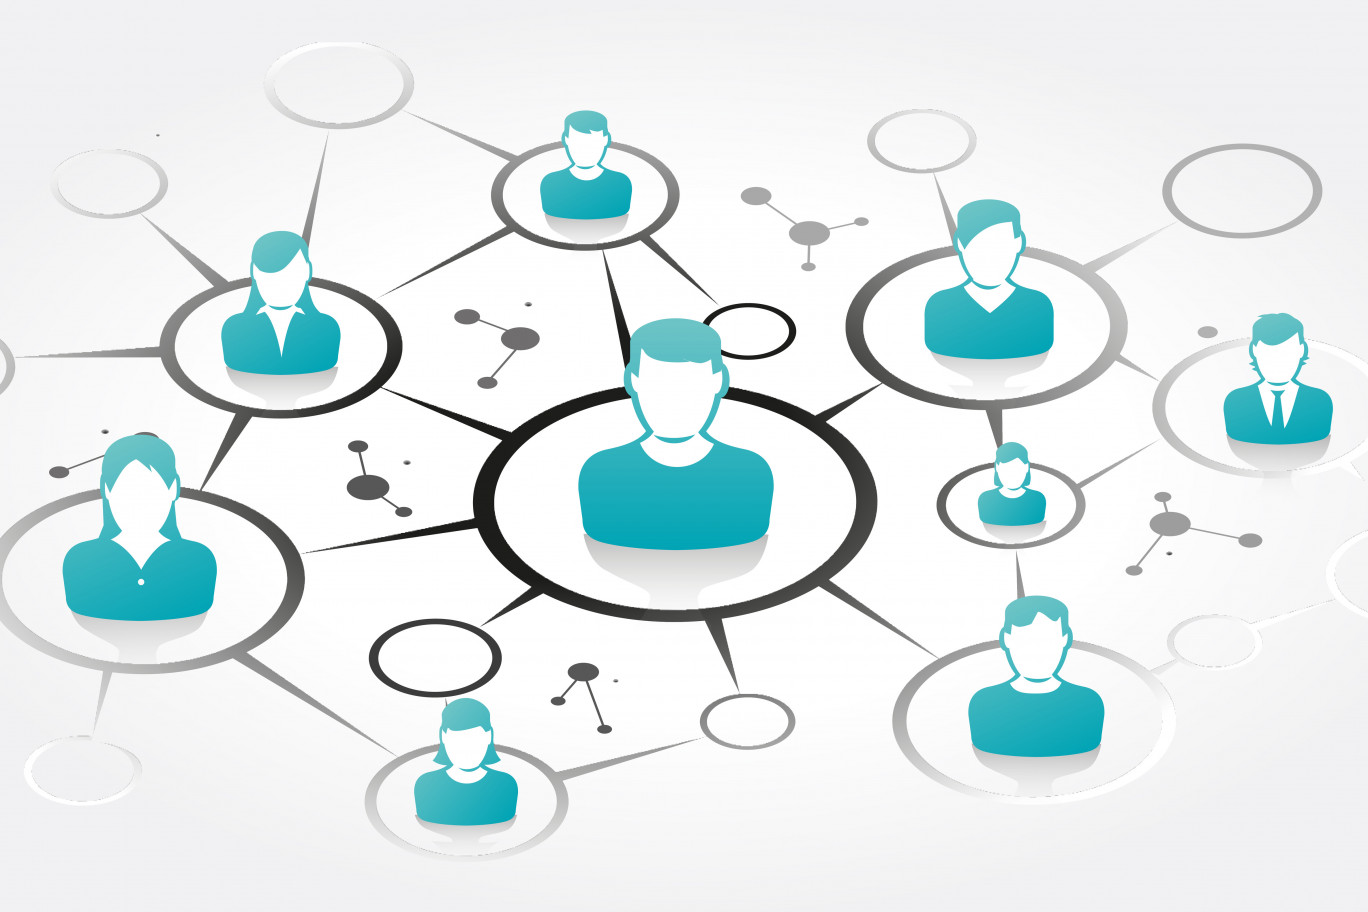 Objectif de la plate-forme : la mise en réseau des entreprises, pour favoriser le collaboratif. (c)AdobeStock